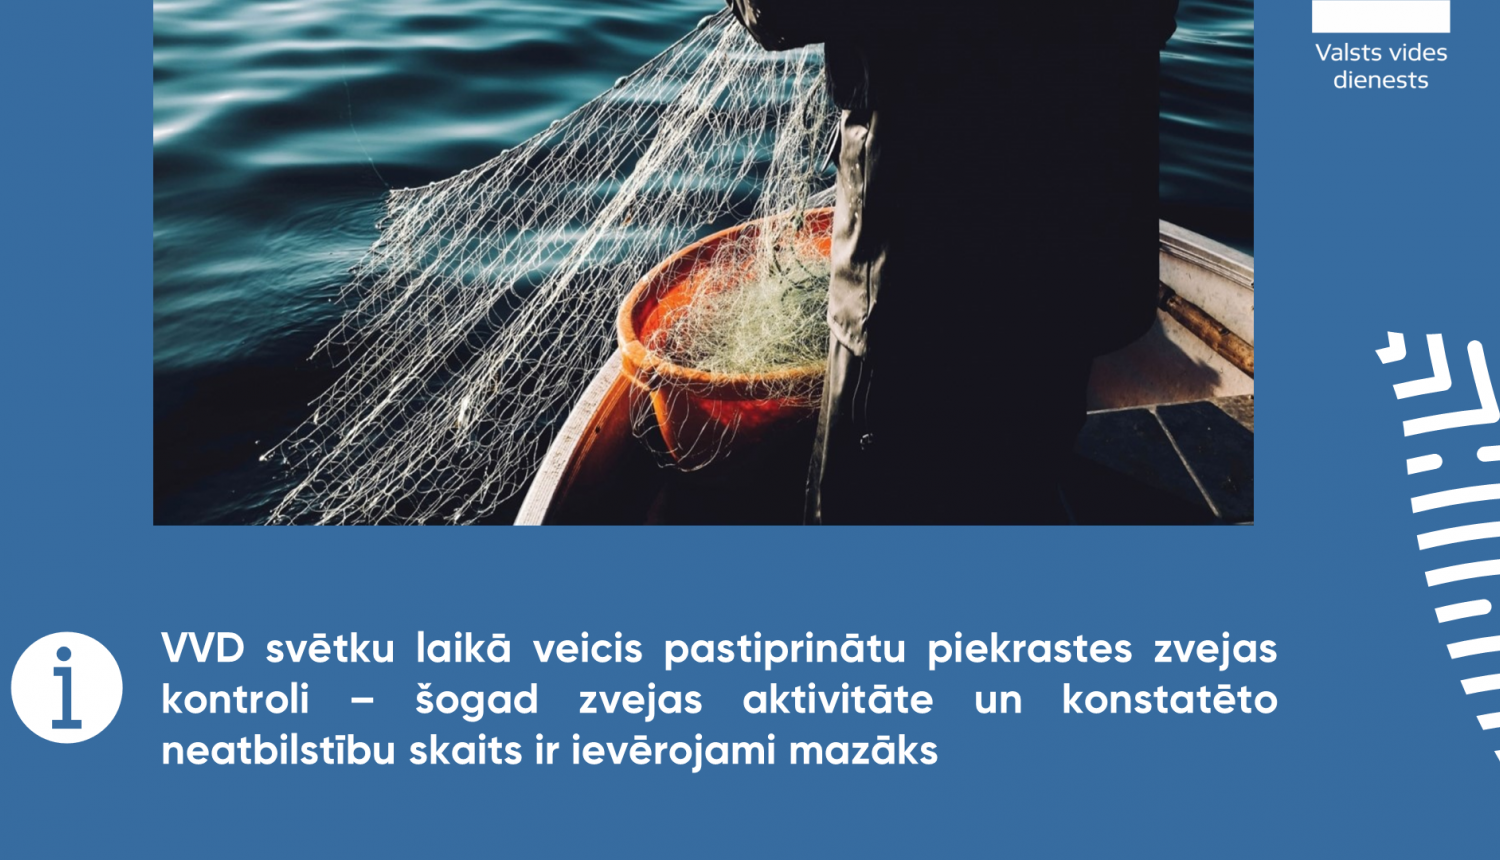 Zvejas tīkli un laiva. VVD svētku laikā veicis pastiprinātu piekrastes zvejas kontroli – šogad zvejas aktivitāte un konstatēto neatbilstību skaits ir ievērojami mazāks